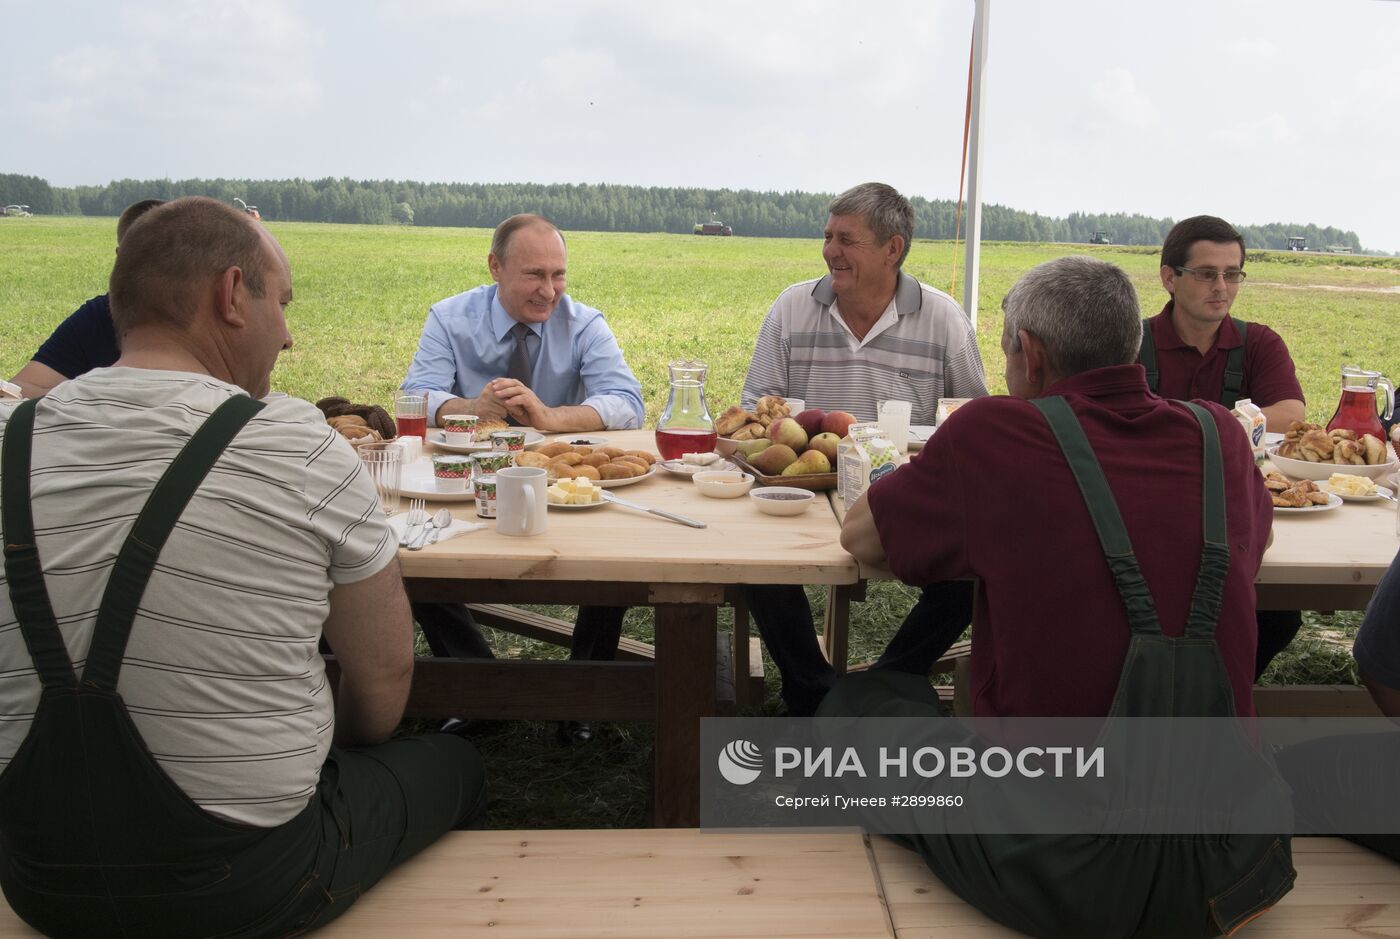 Рабочая поездка президента РФ В. Путина в Тверскую область